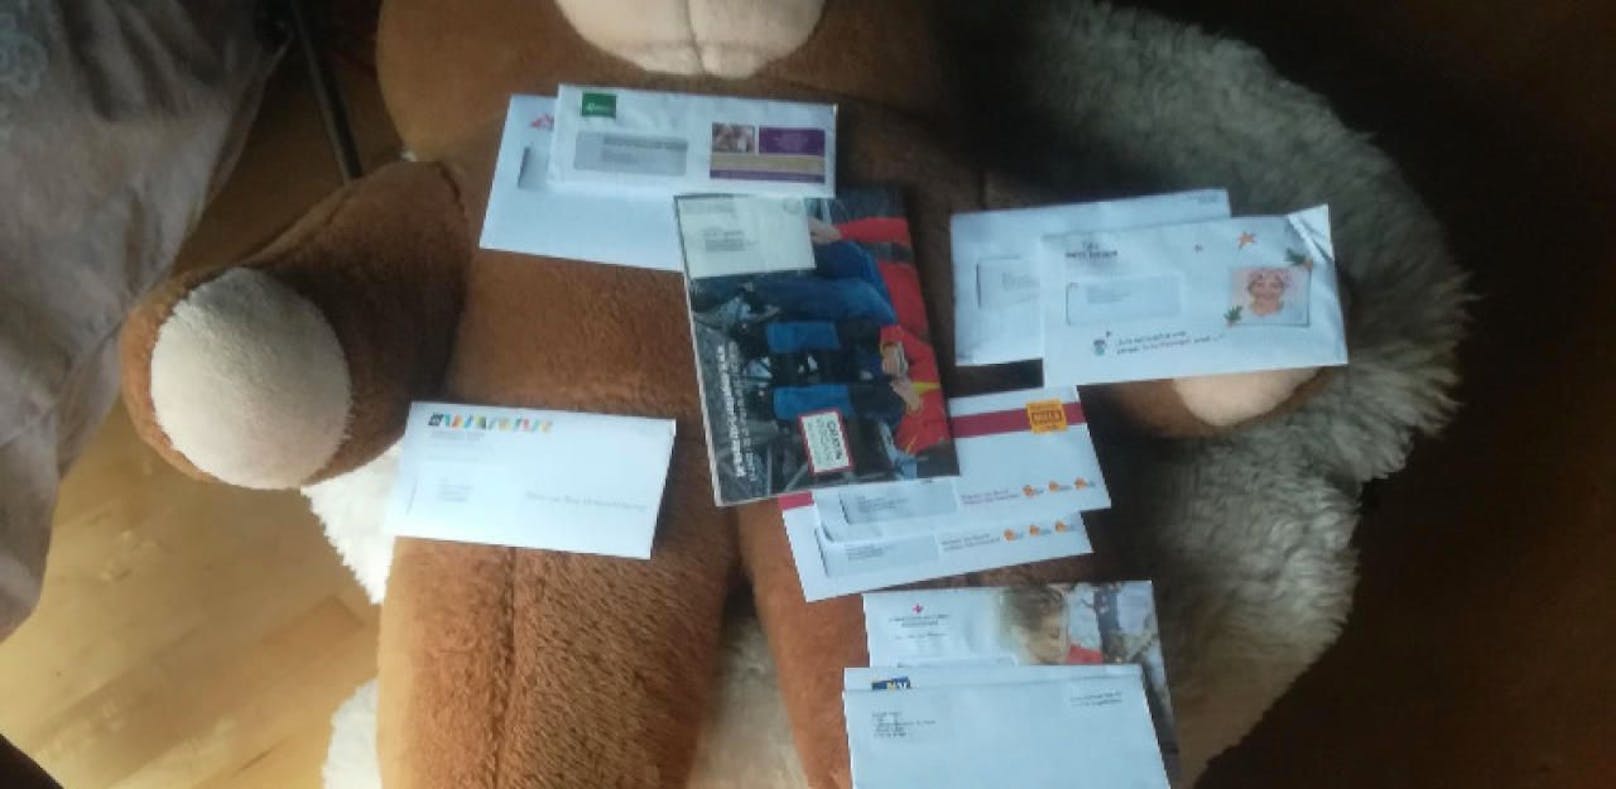 Wut auf Post: Mann erhält ständig fremde Briefe